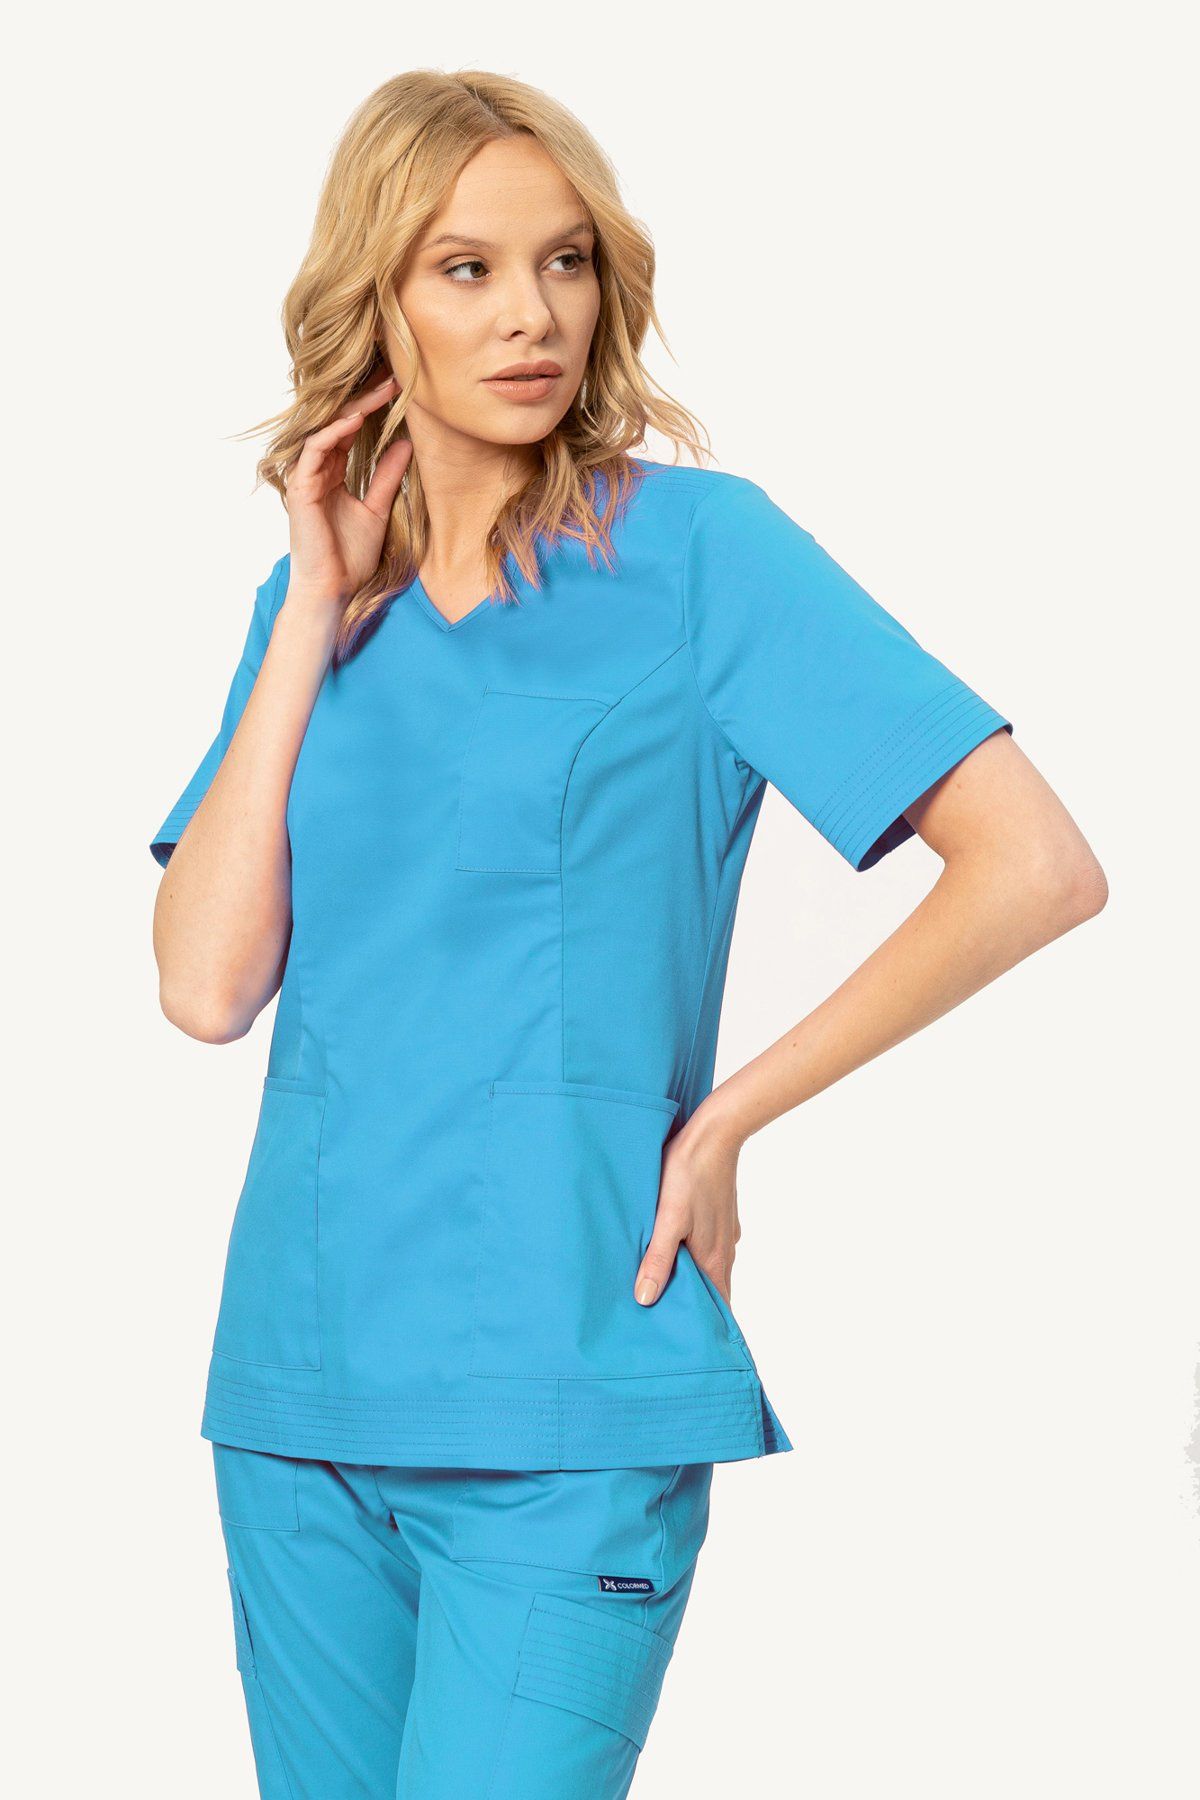 Bluza medyczna STRETCH (BE6) - 6 kolorów